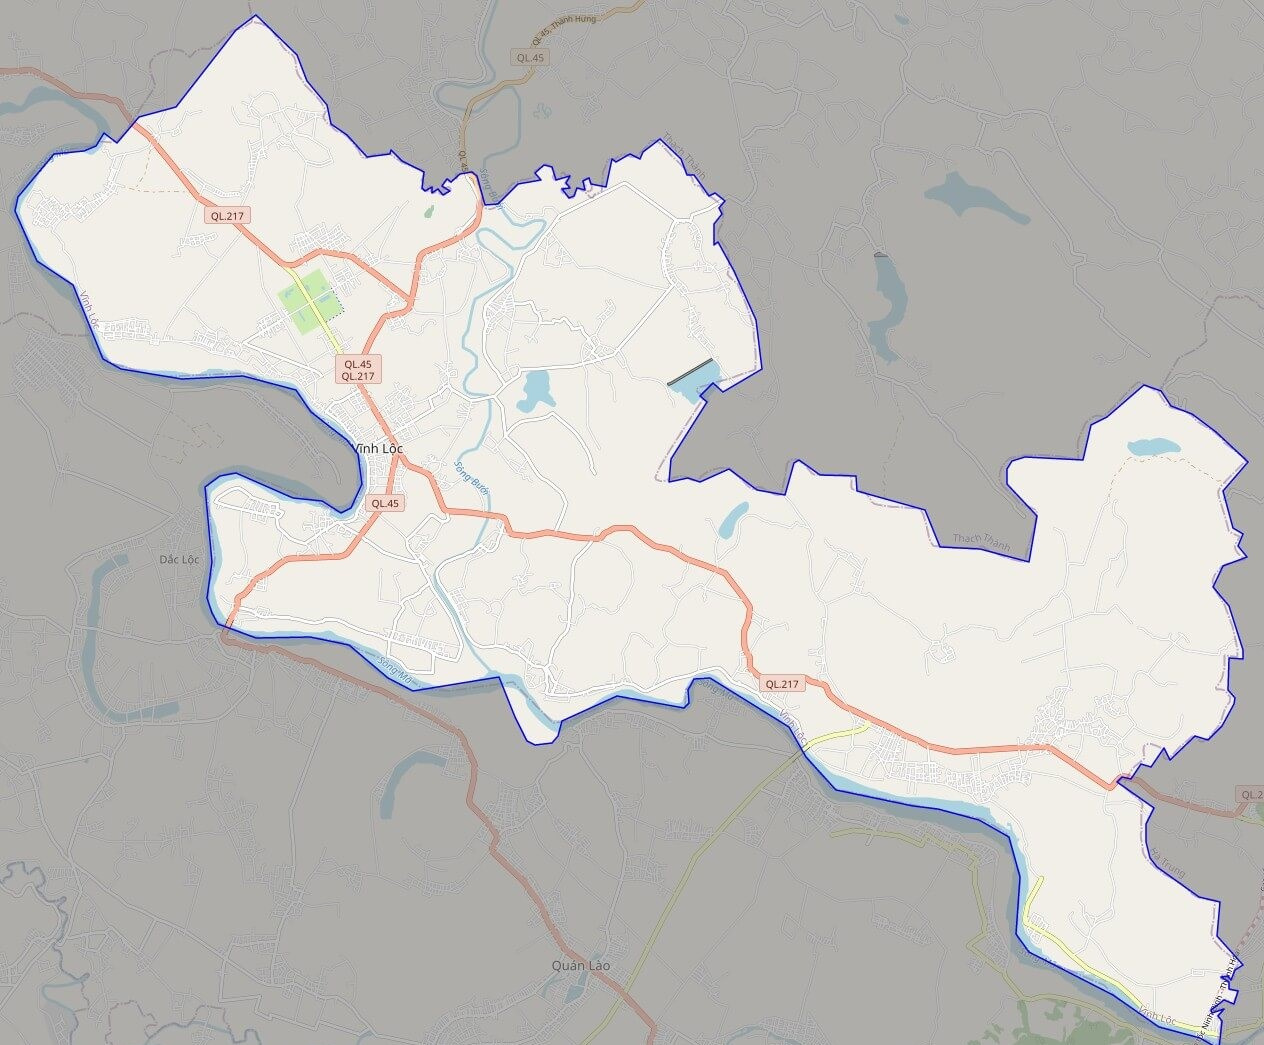 Bản đồ giao thông huyện Vĩnh Lộc